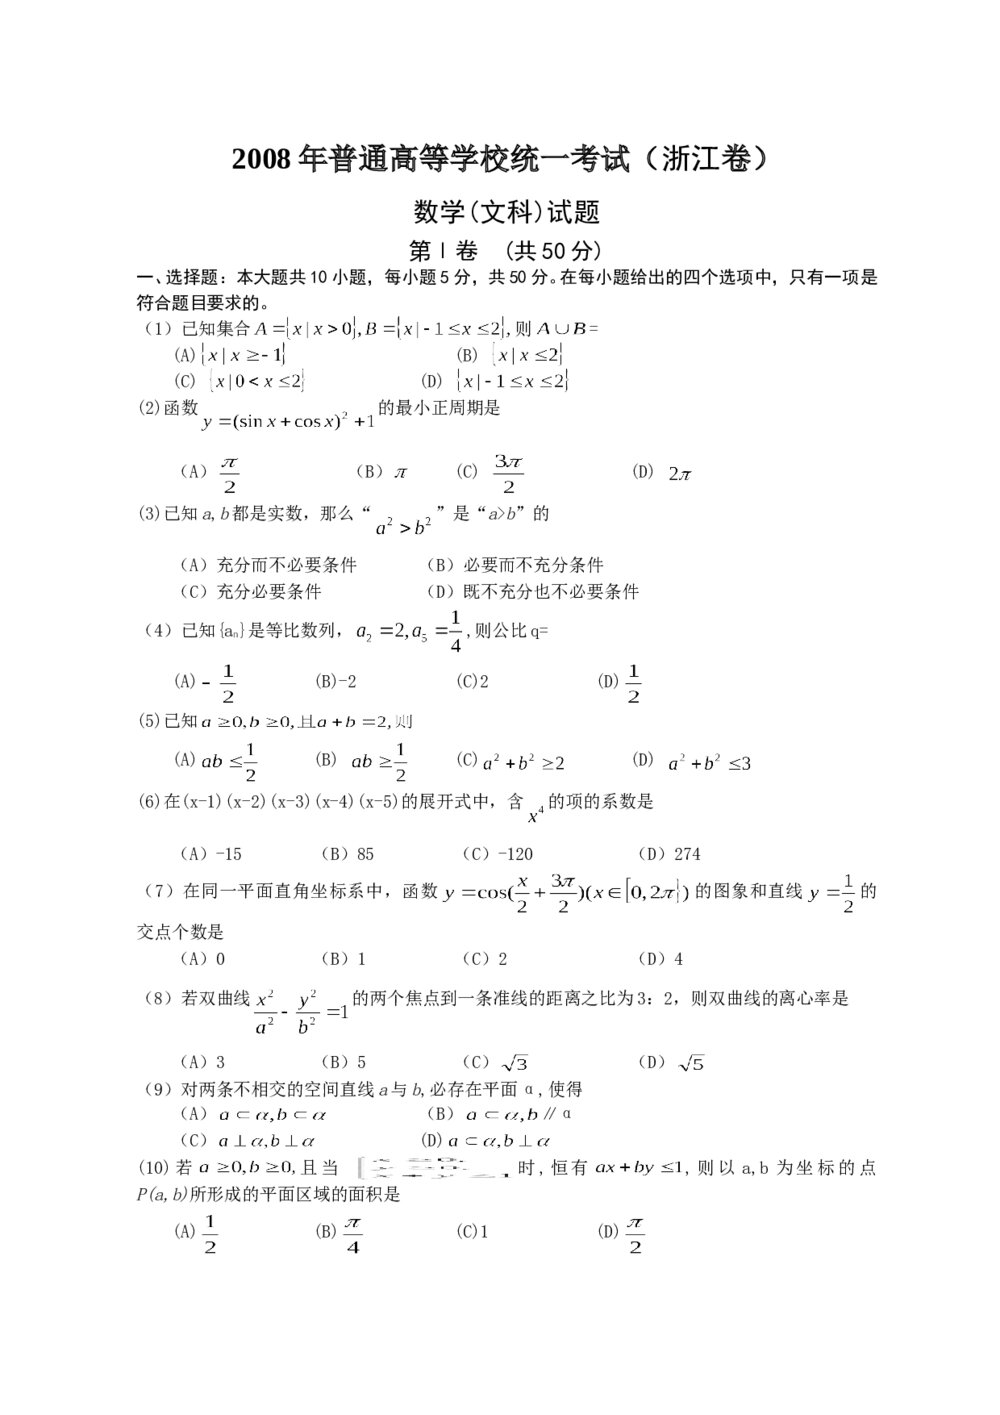 2008年高考浙江(文科)数学试卷+答案(精校版)